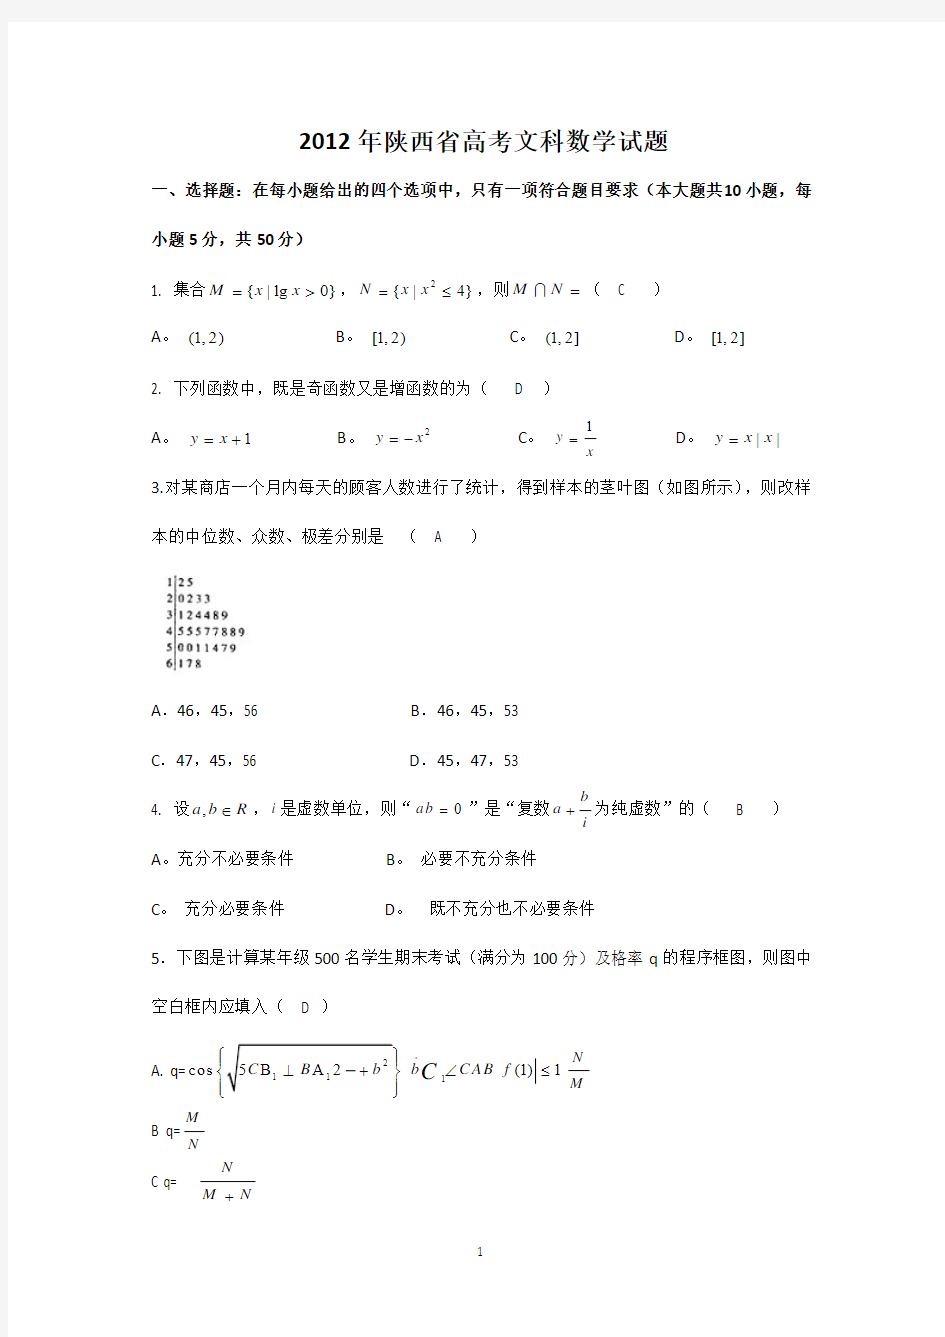 2012年高考真题——数学文(陕西卷)word版